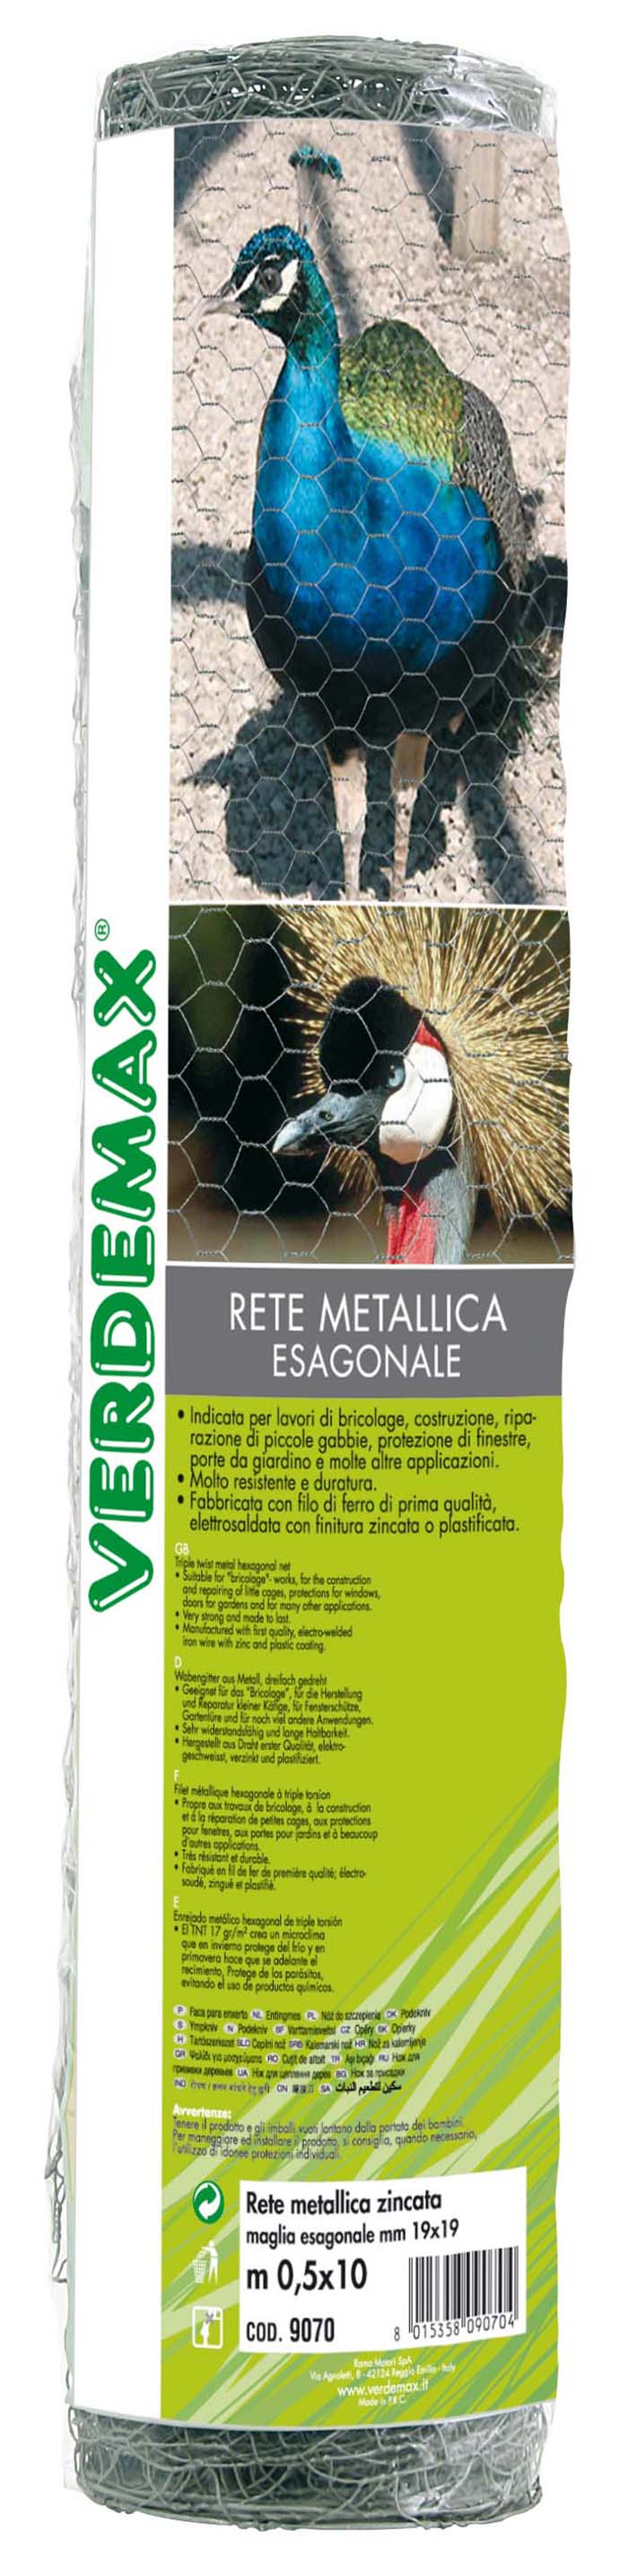 VERDEMAX METAL HEXAGONAL NET 0.5X10M BEIGE